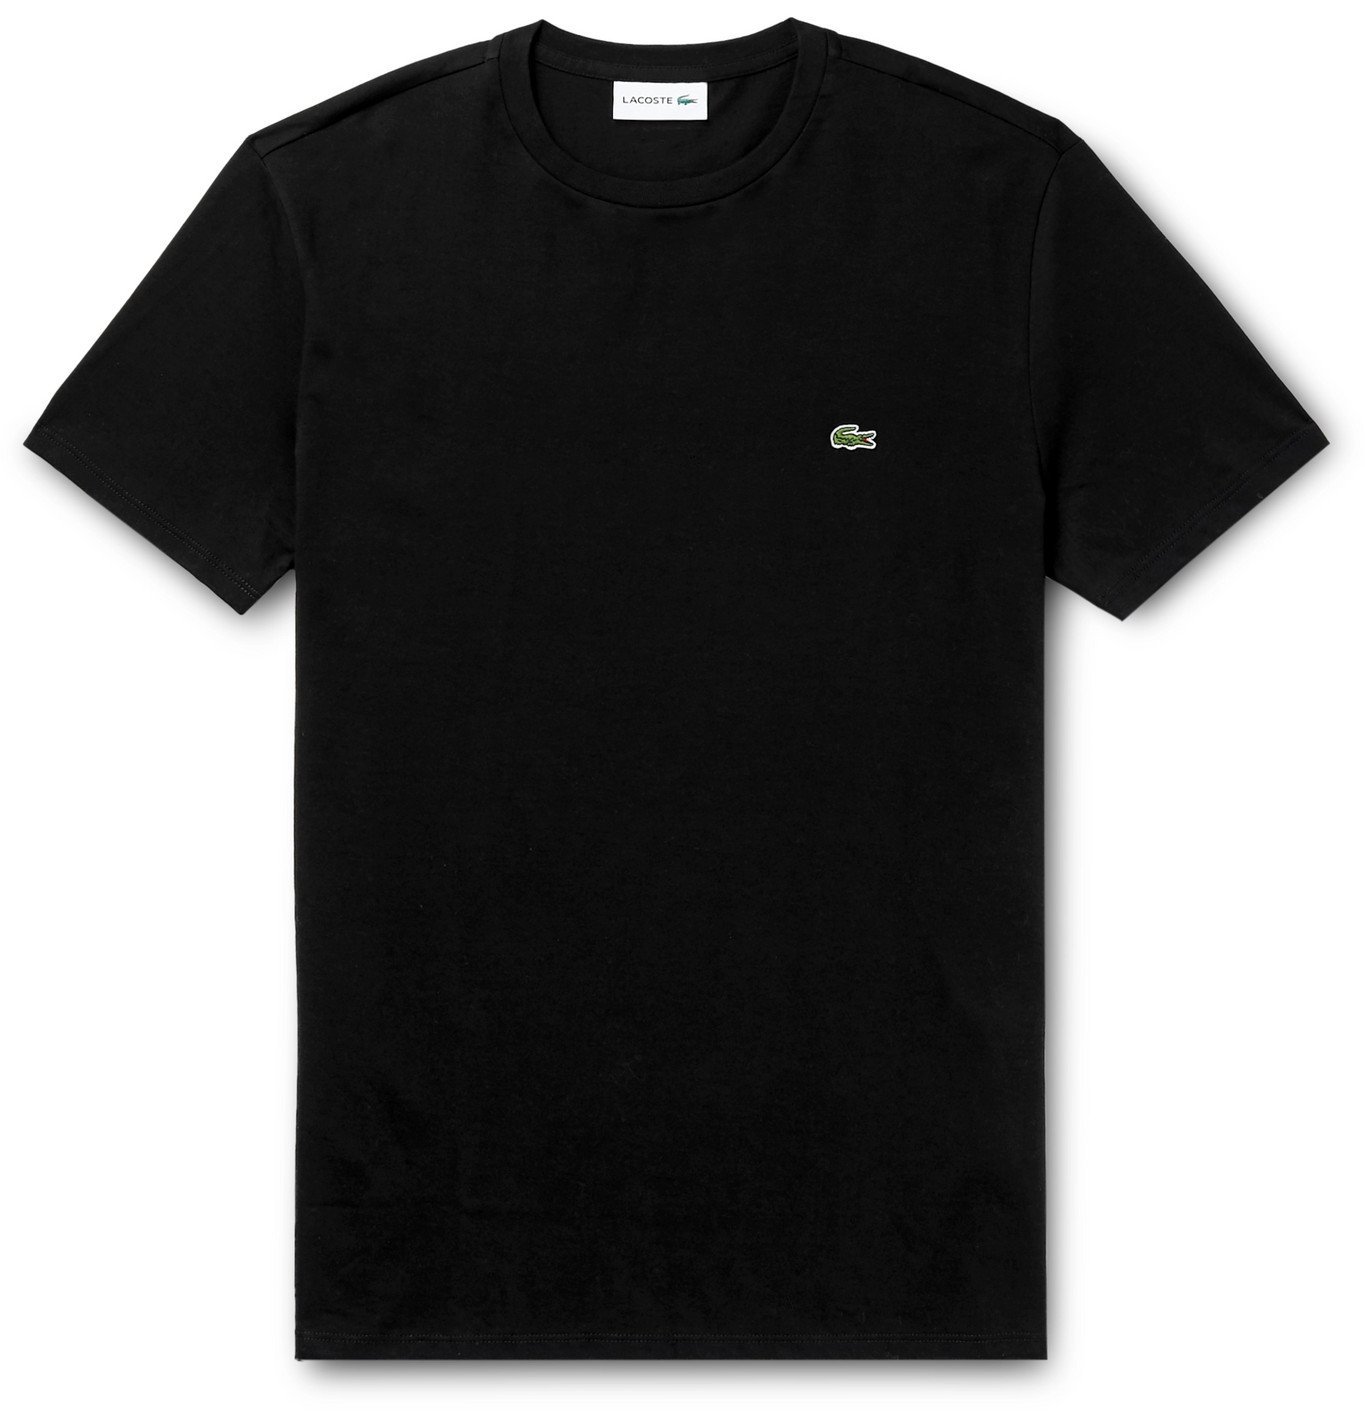 Lacoste - Slim-Fit Logo-Appliquéd Cotton-Jersey T-Shirt - Black Lacoste